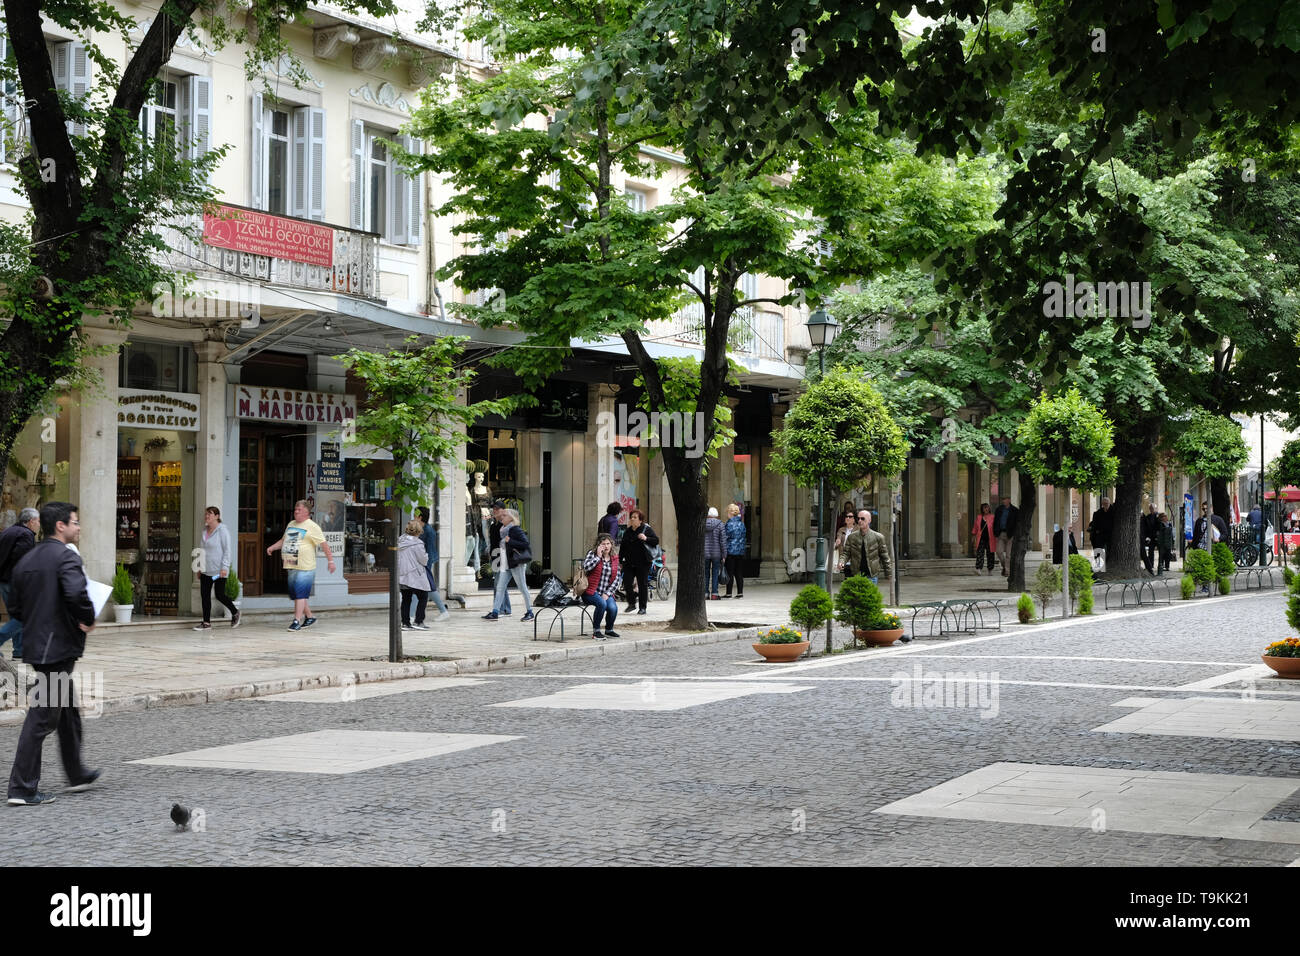 Gli amanti dello shopping, i turisti e la gente del luogo visita un pedetrianised area dello shopping della città di Corfù, Corfù, Grecia Foto Stock